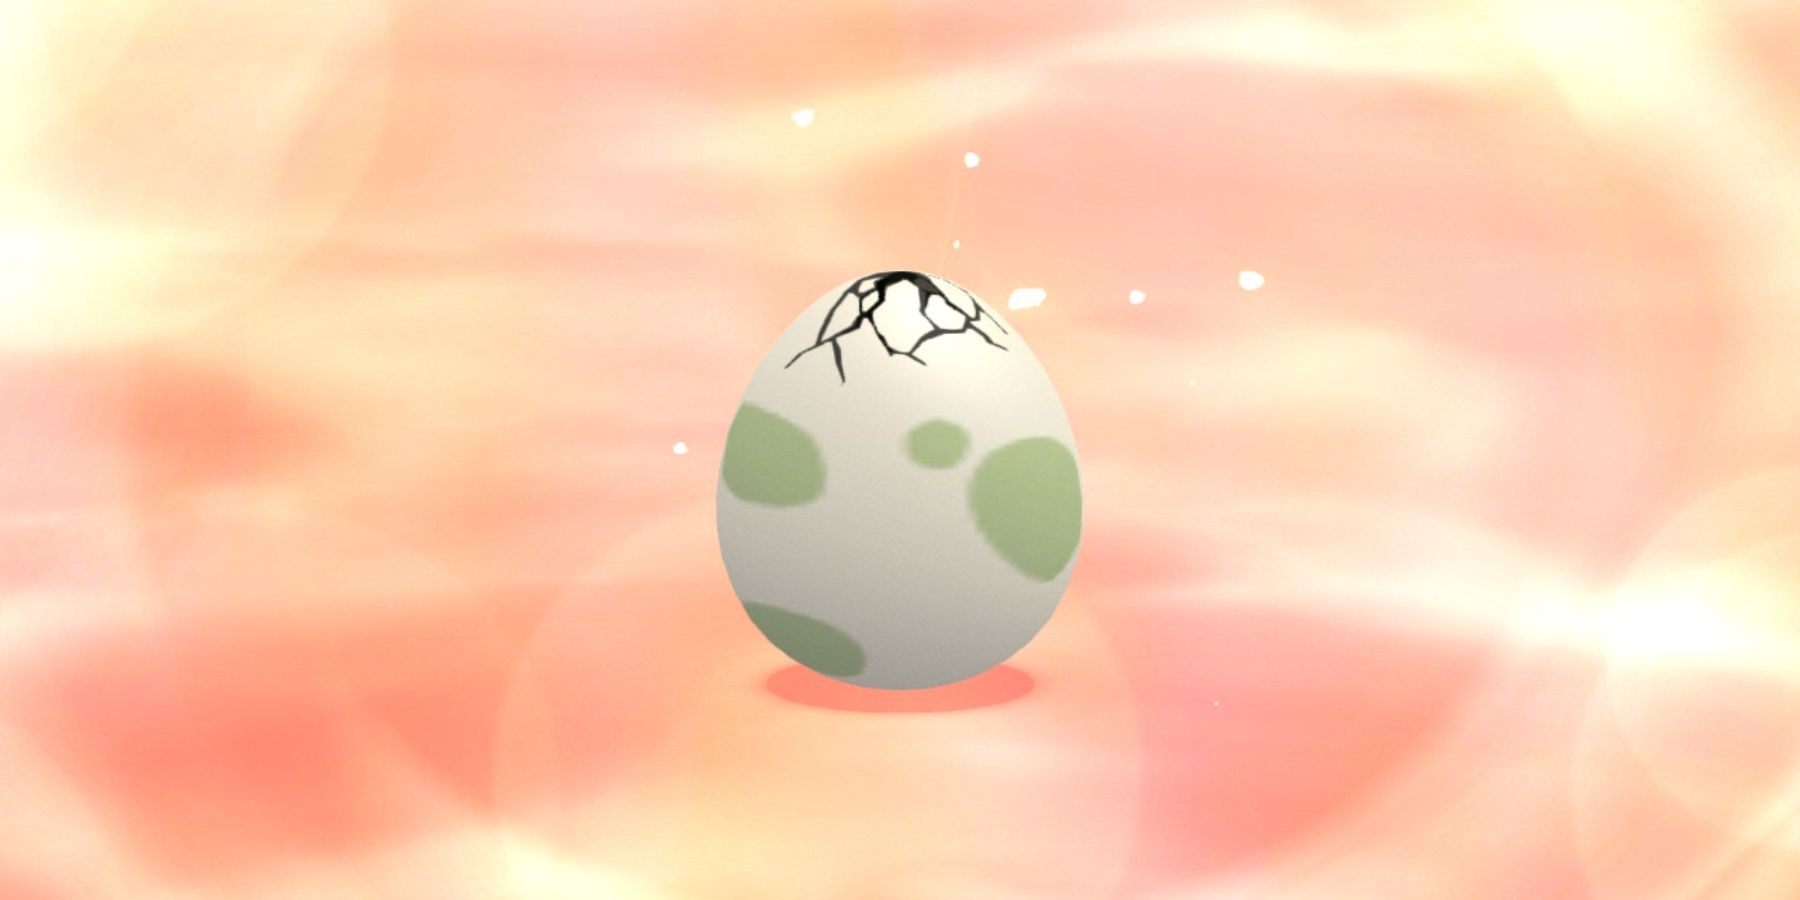 яйцо покемон бриллиантовый сияющий жемчуг